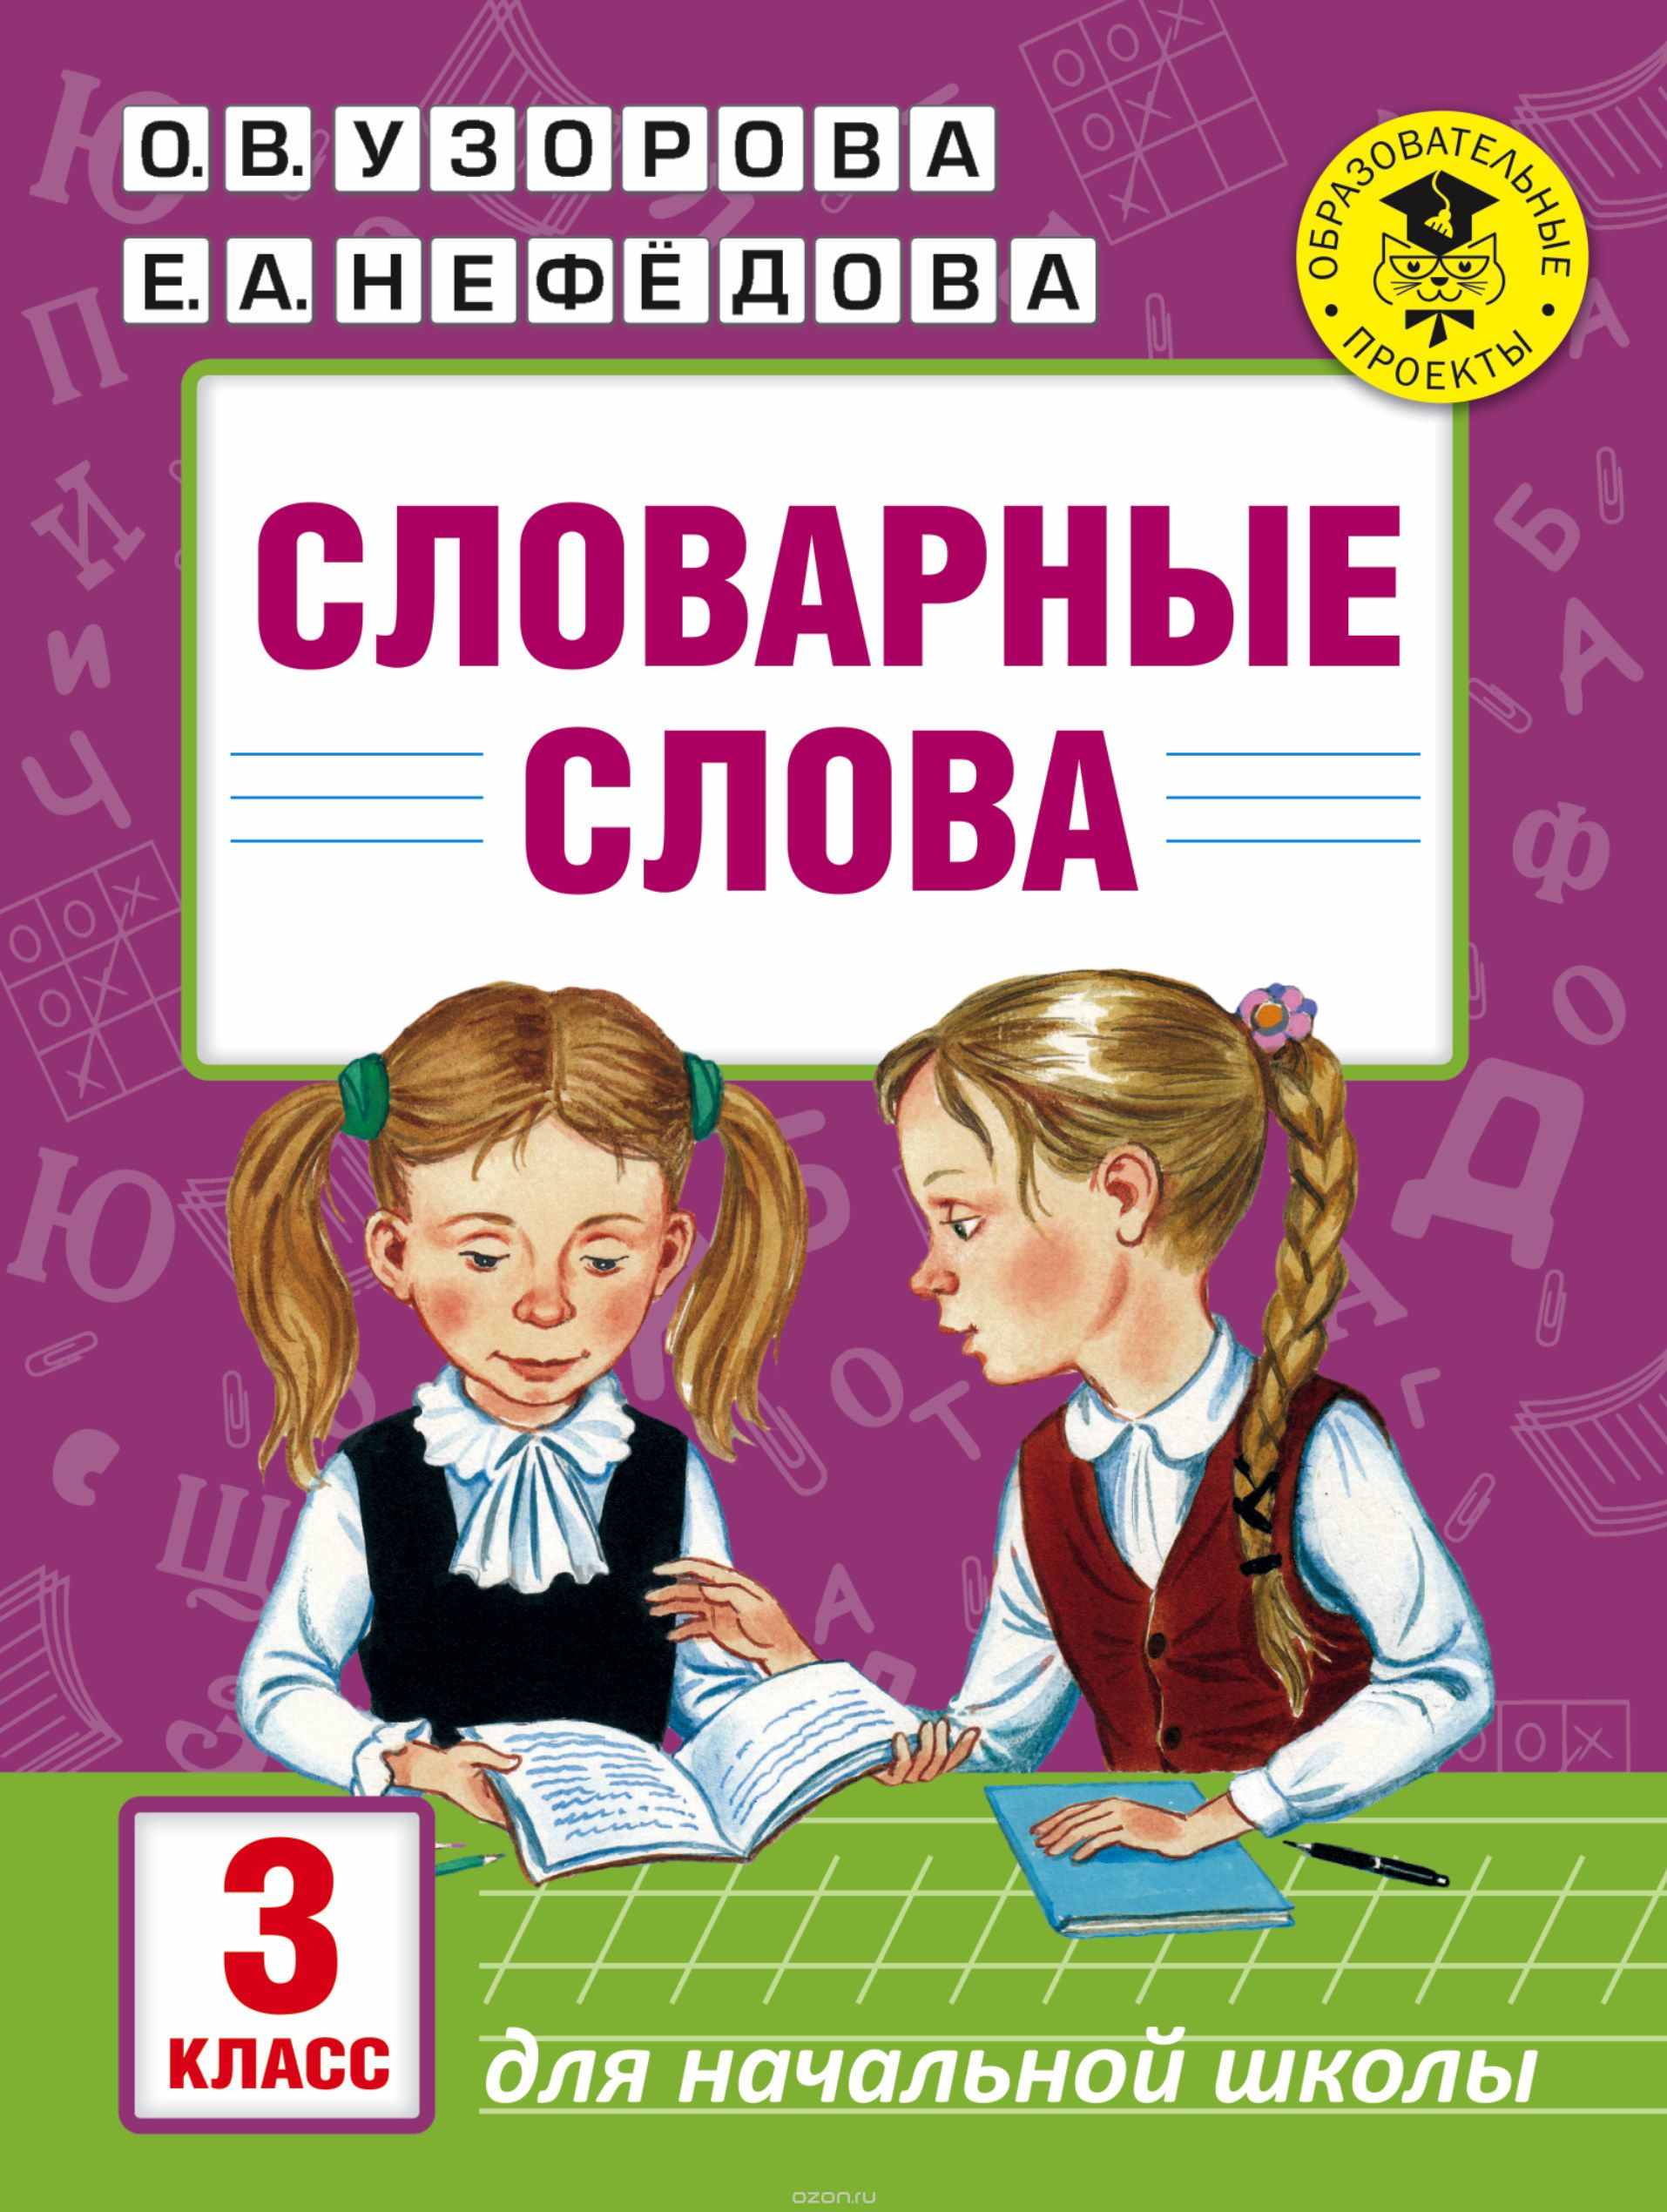 Словарные слова. 3 класс, О. В. Узорова, Е. А. Нефедова